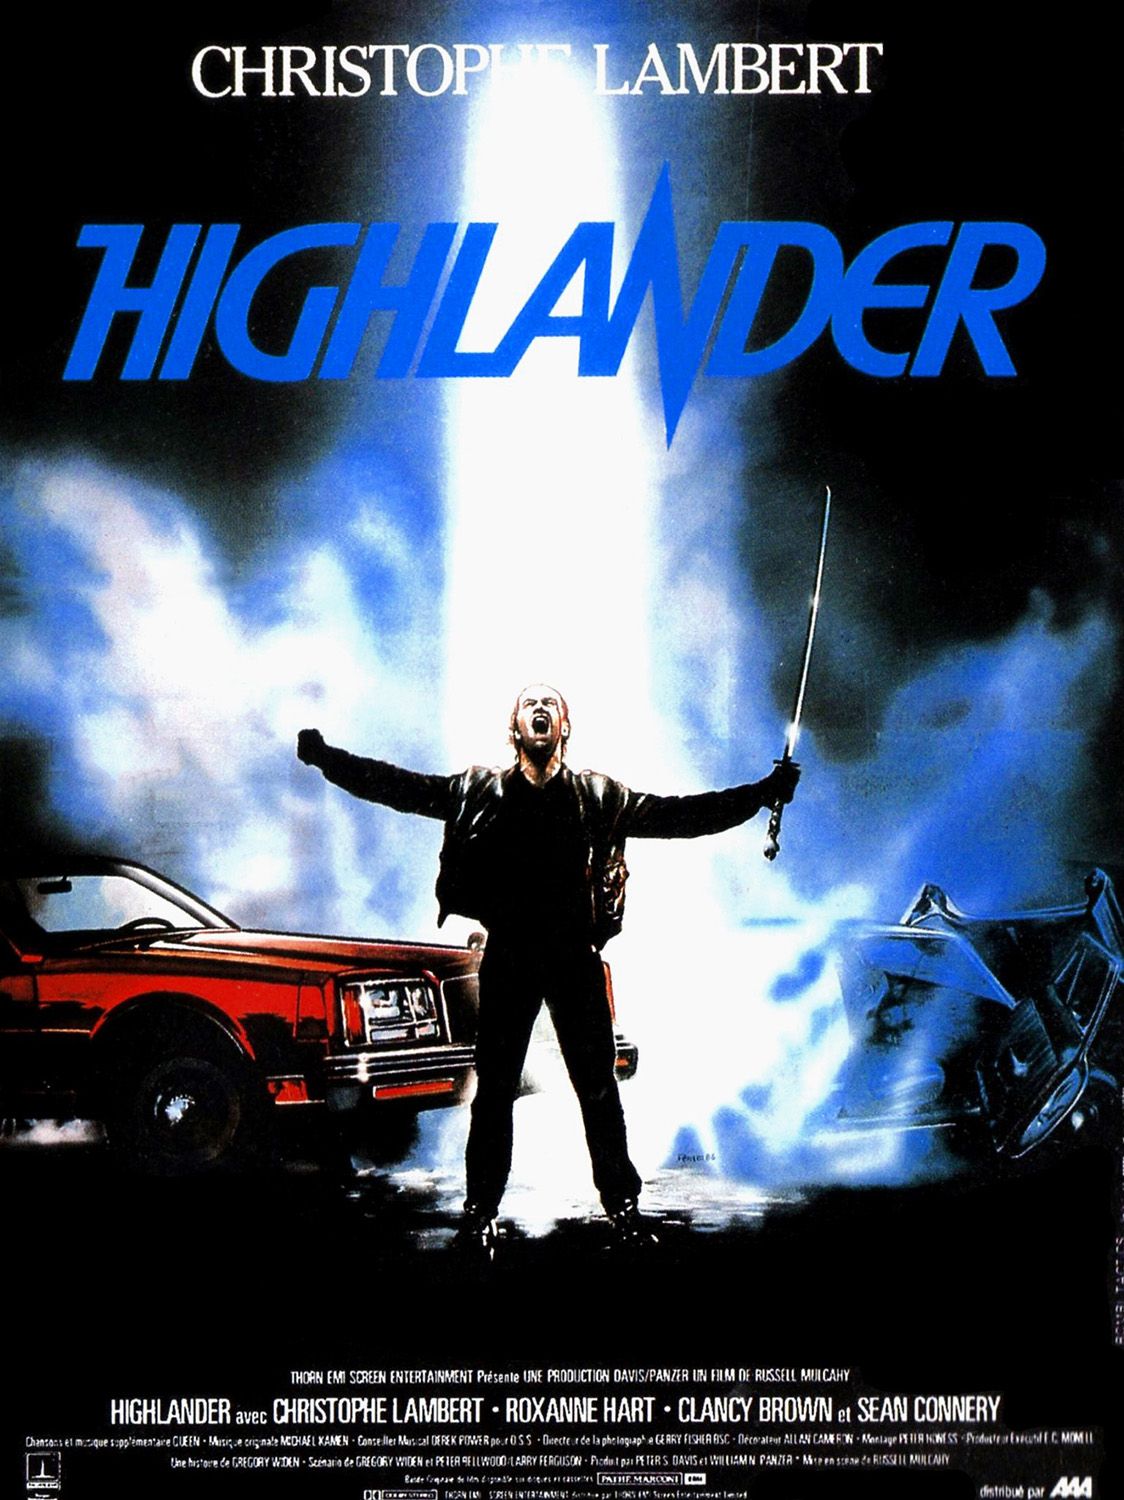 Highlander.jpg